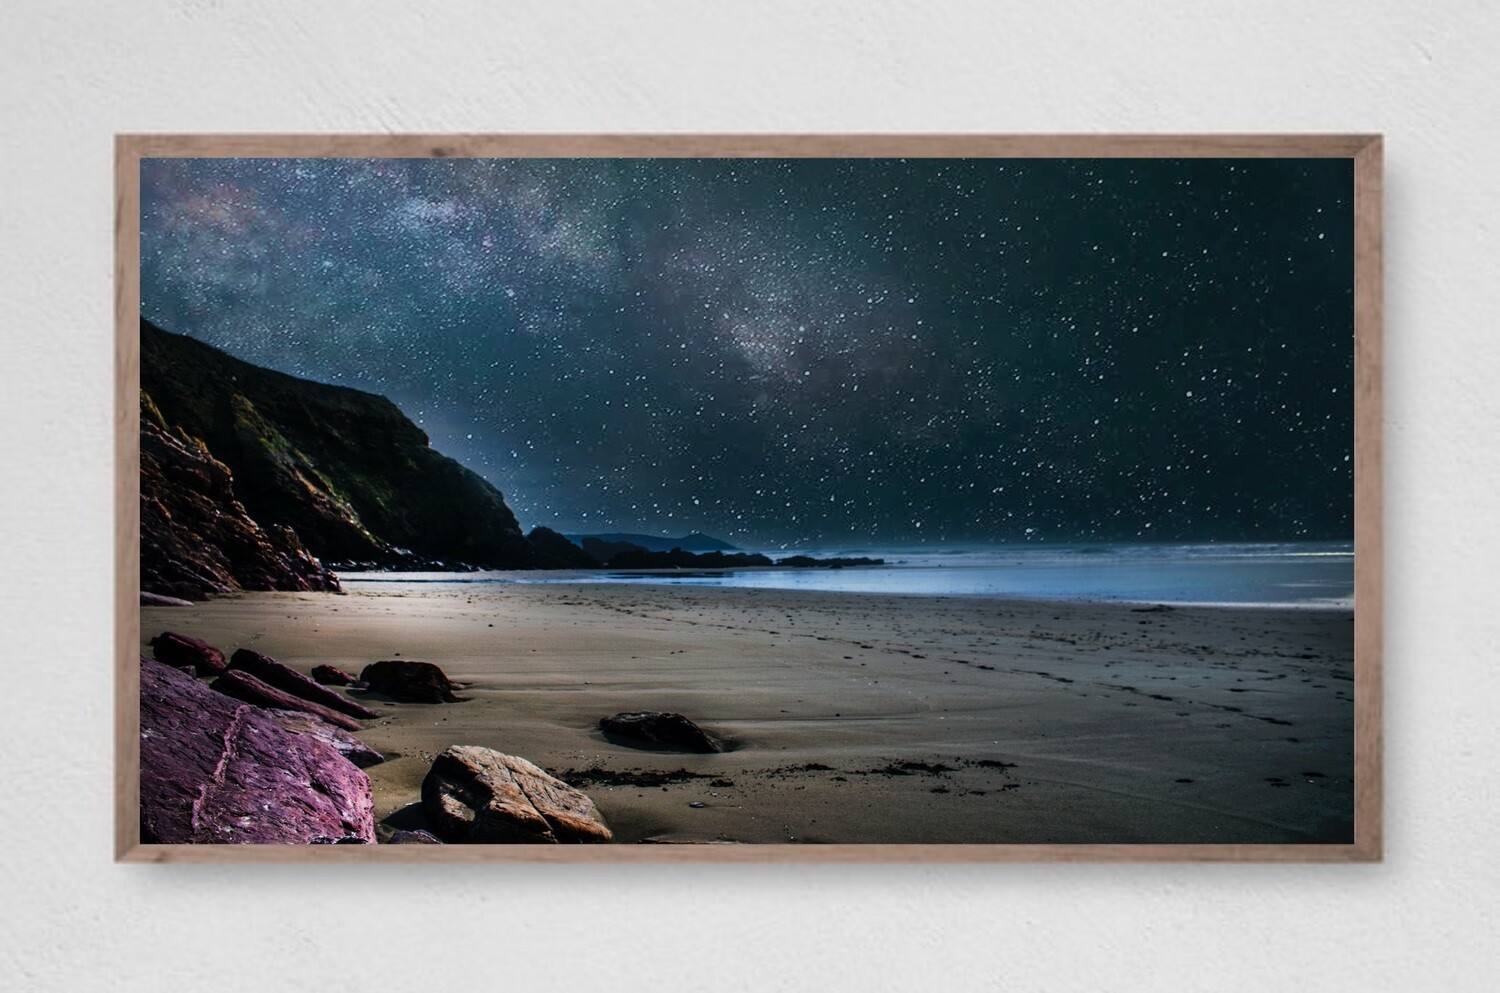 Samsung Frame TV Art, Starry Night Sky, Instant Download, Digital Download